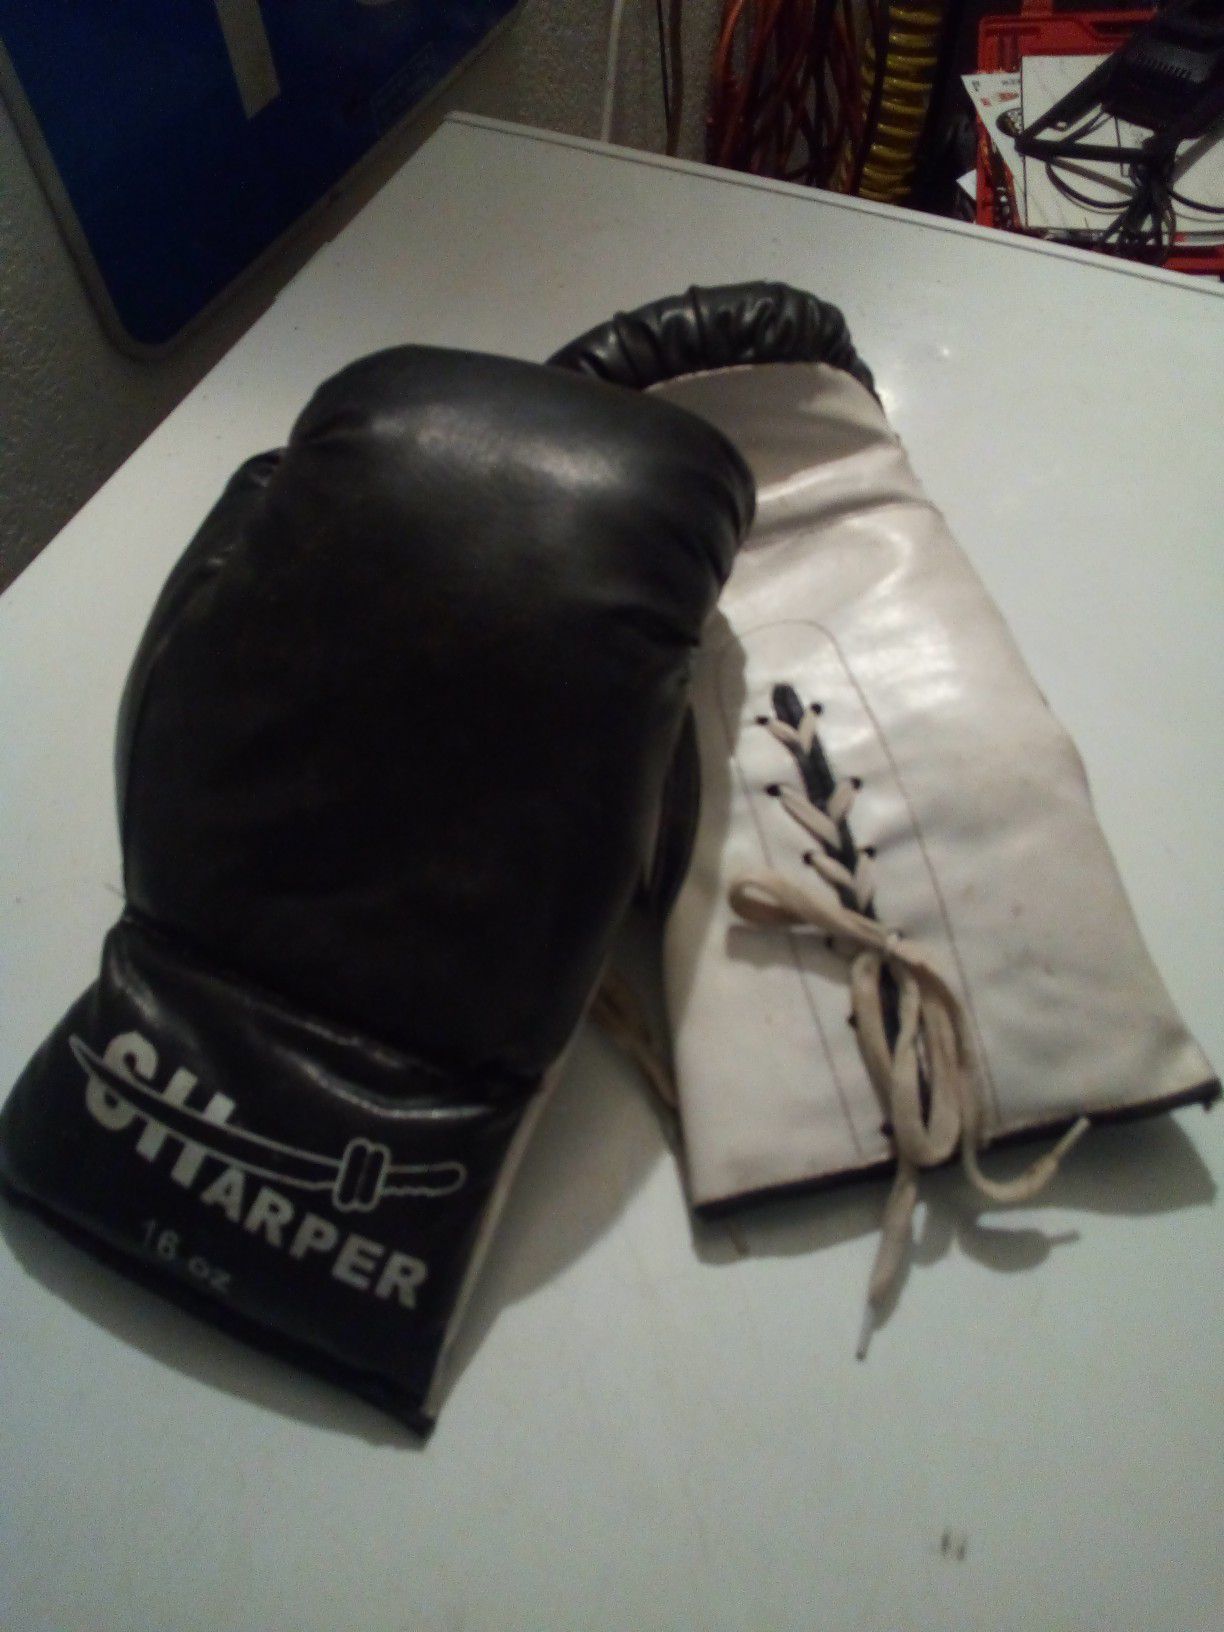 Sharper boxing gloves